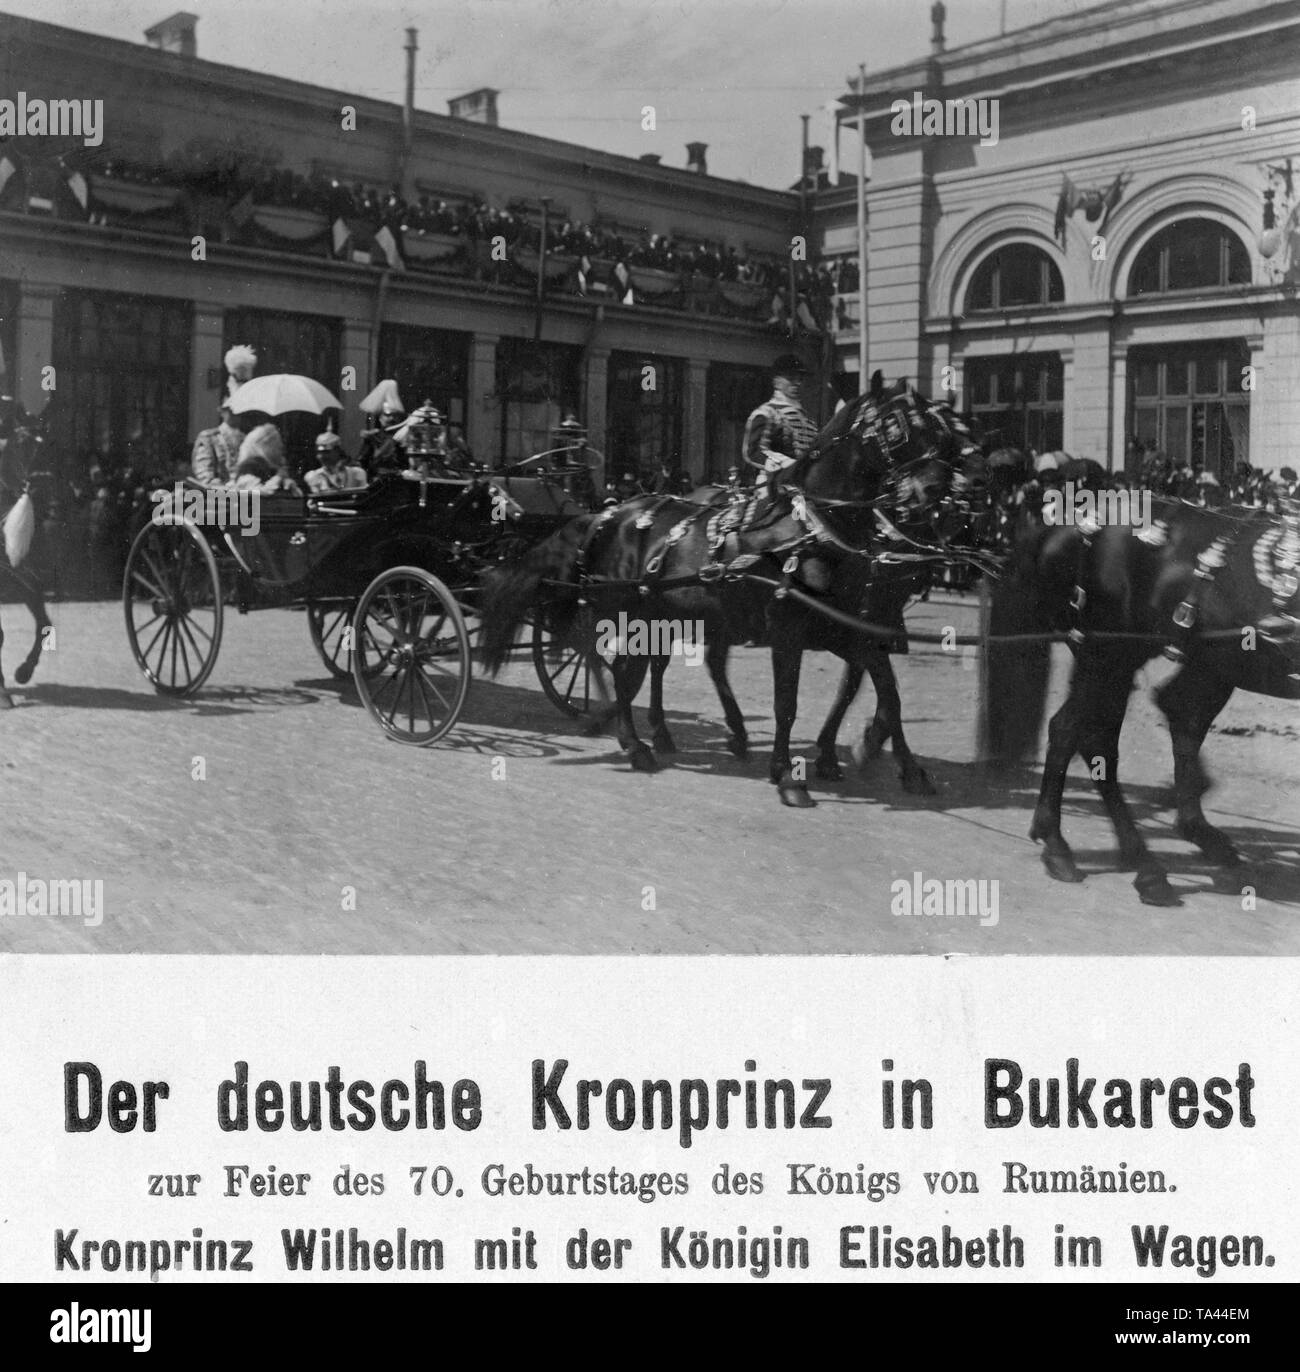 Le Prince de Prusse visites Bucarest à l'occasion du 70e anniversaire de la roi roumain Karl Eitel Friedrich von Hohenzollern-Sigmaringen. Ici il est accompagné de l'impératrice autrichienne Elisabeth von Habsburg dans un chariot. Banque D'Images